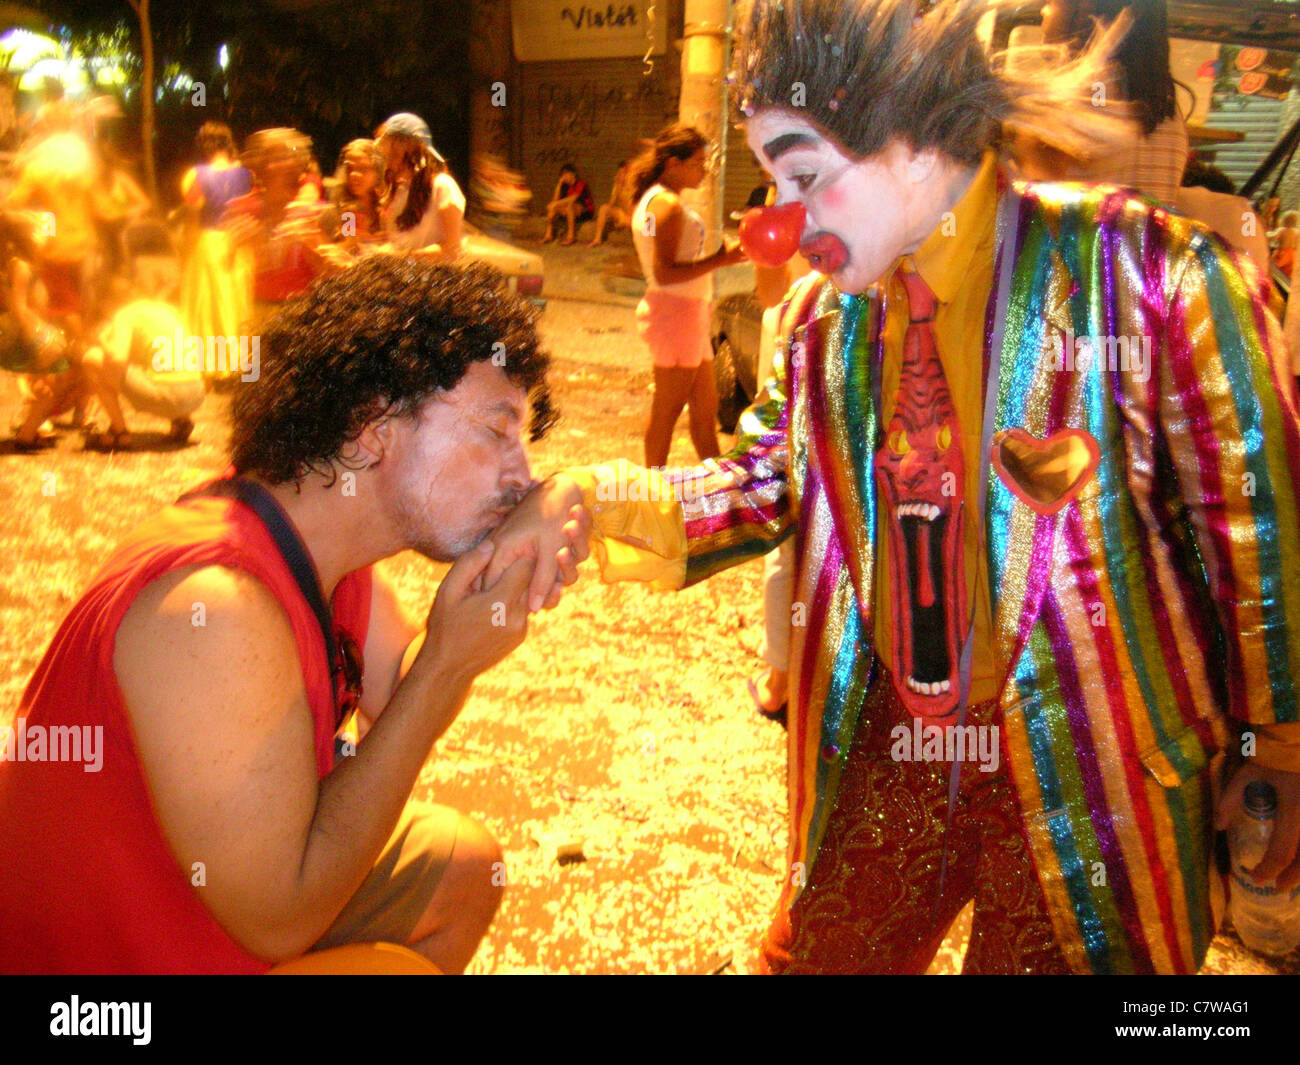 Reveler clown baciare la mano a Rio de Janeiro il carnevale di strada, Brasile. Stile di vita Carioca Foto Stock